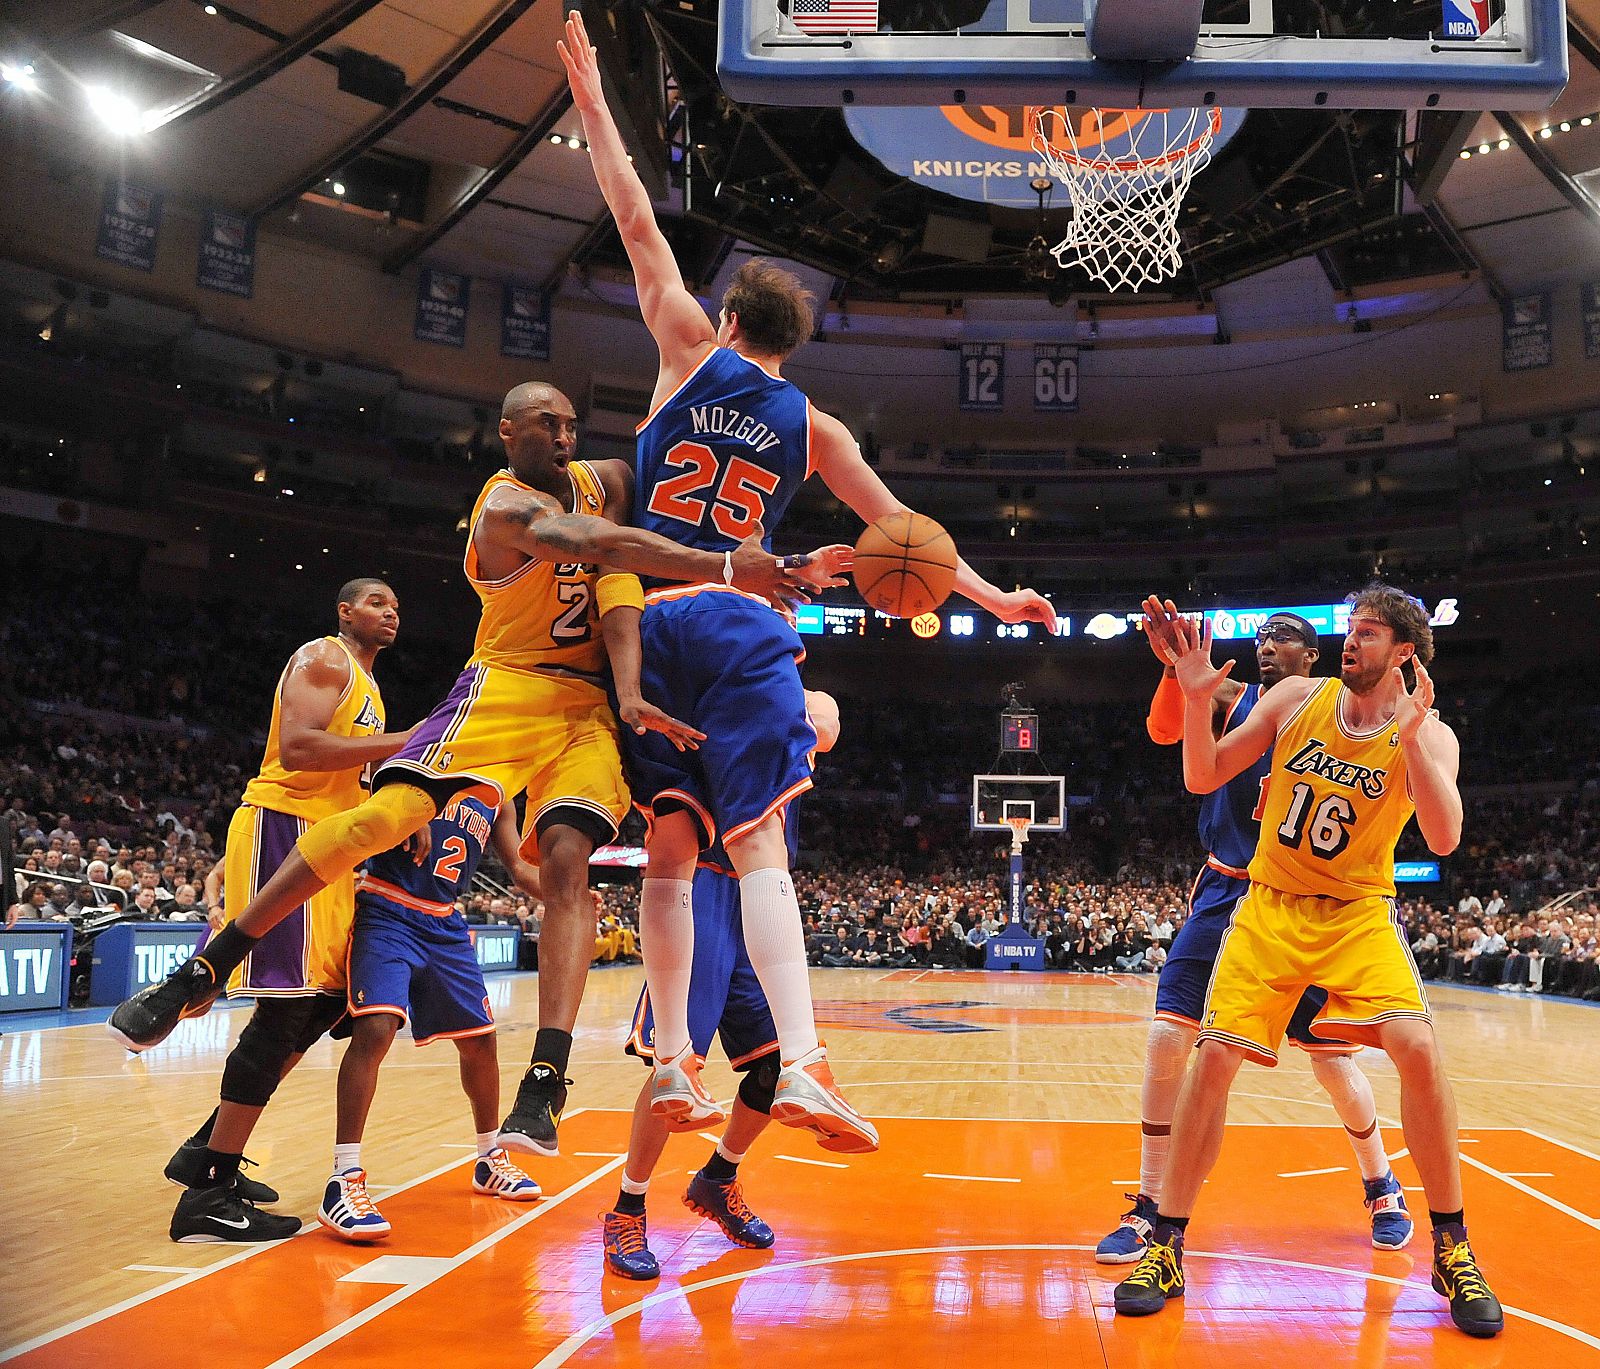 El jugador Kobe Bryant realiza un pase a Pau Gasol Timofey Mozogov de los Knicks.